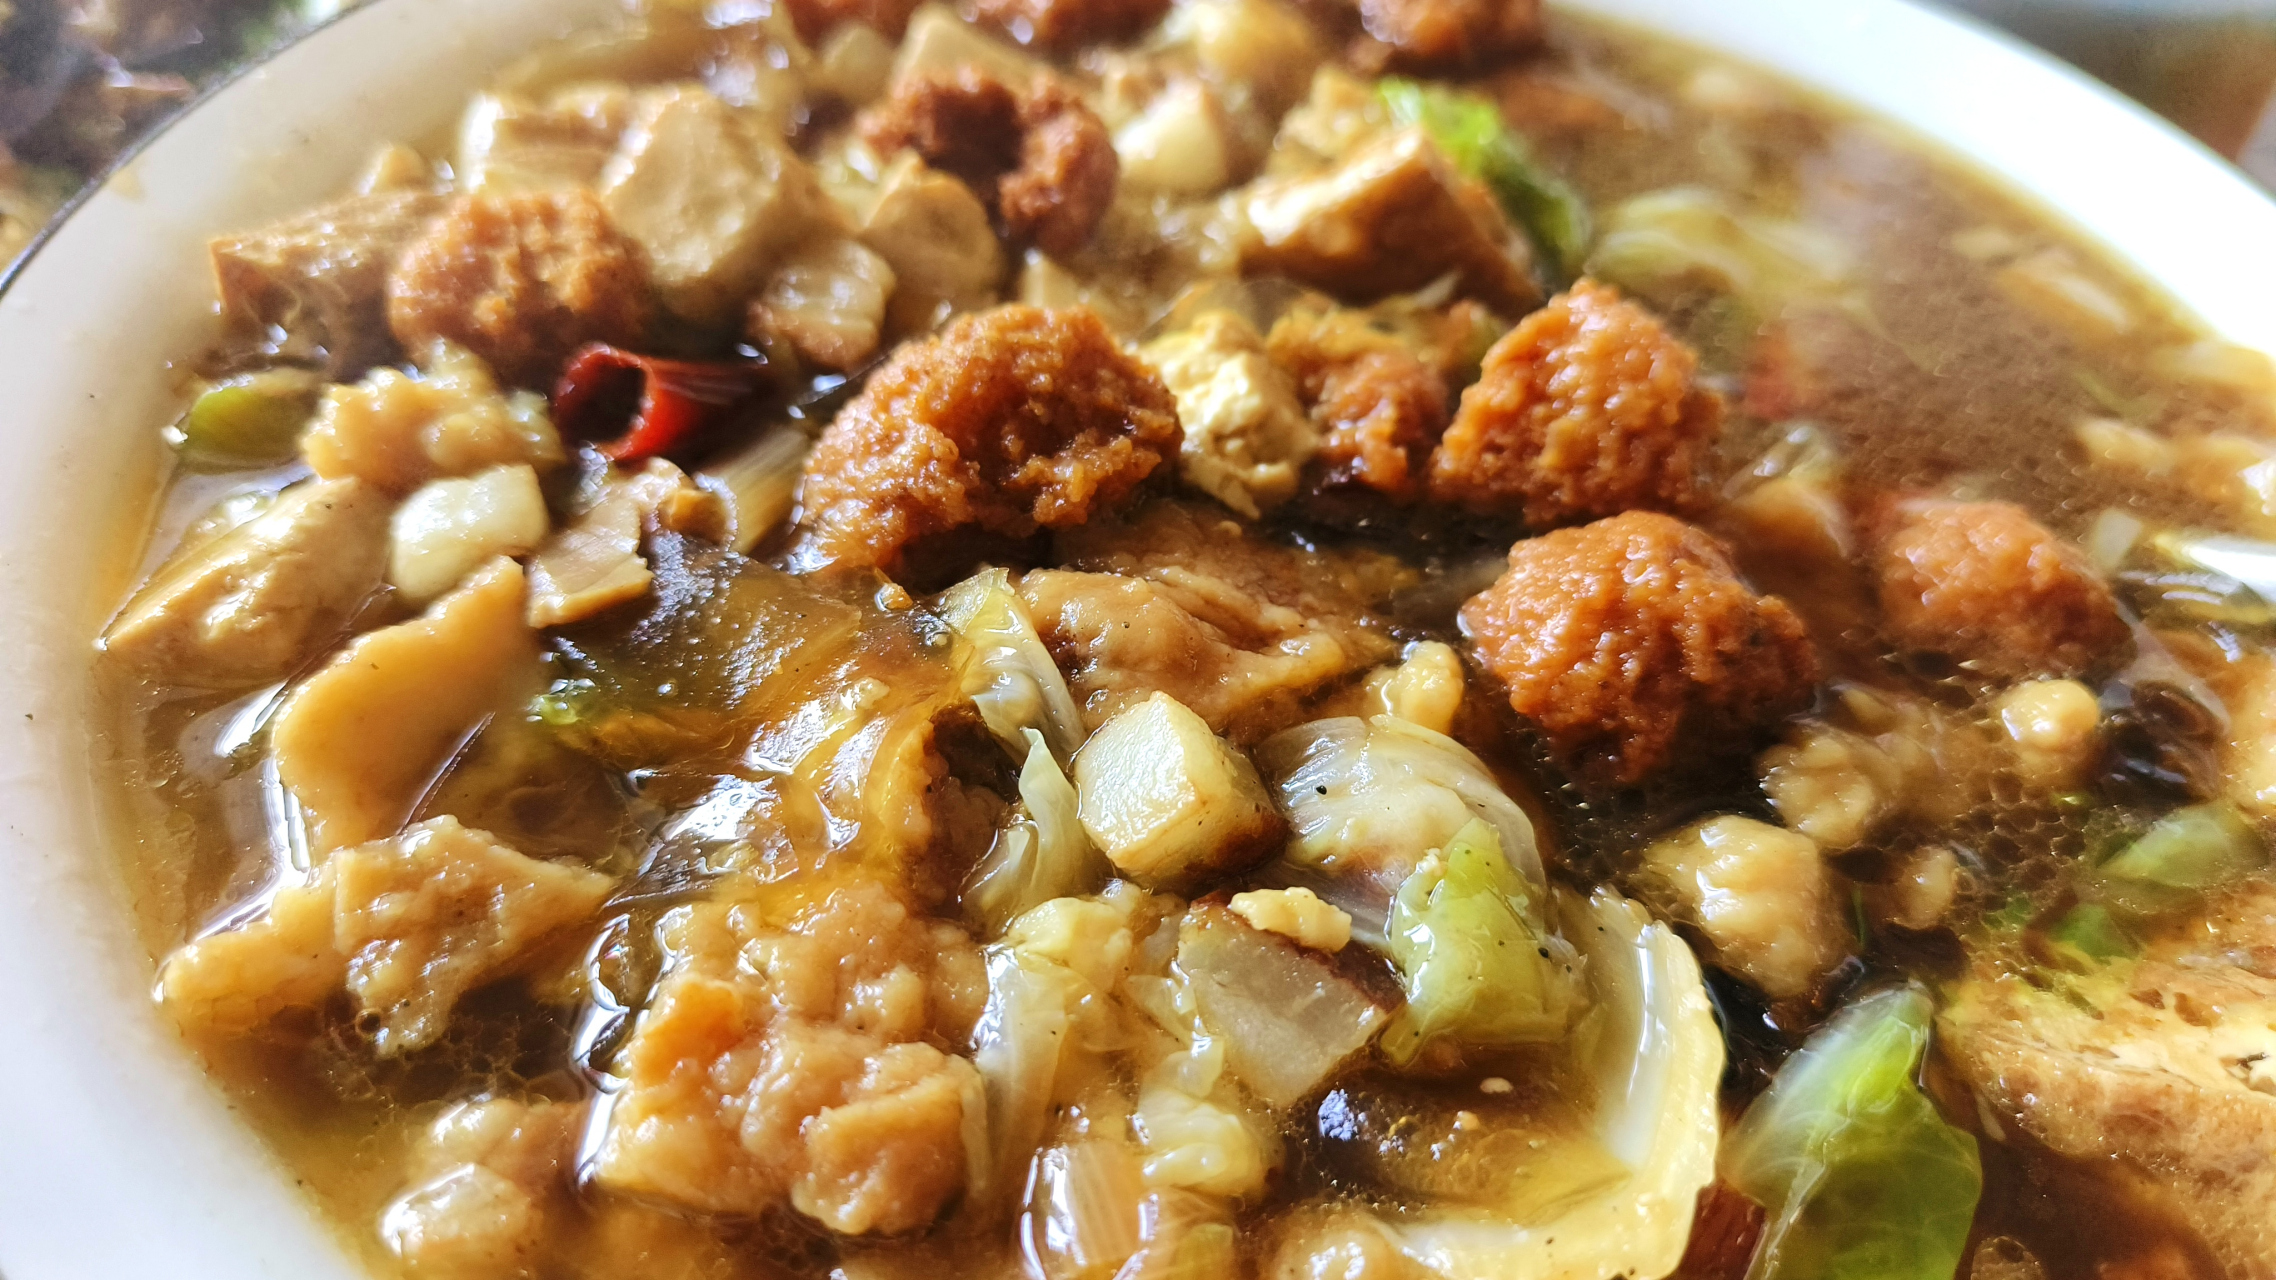 河南濮阳范县濮城的特色美食:杂拌和肉沫辣椒,配上馒头你能吃几碗?